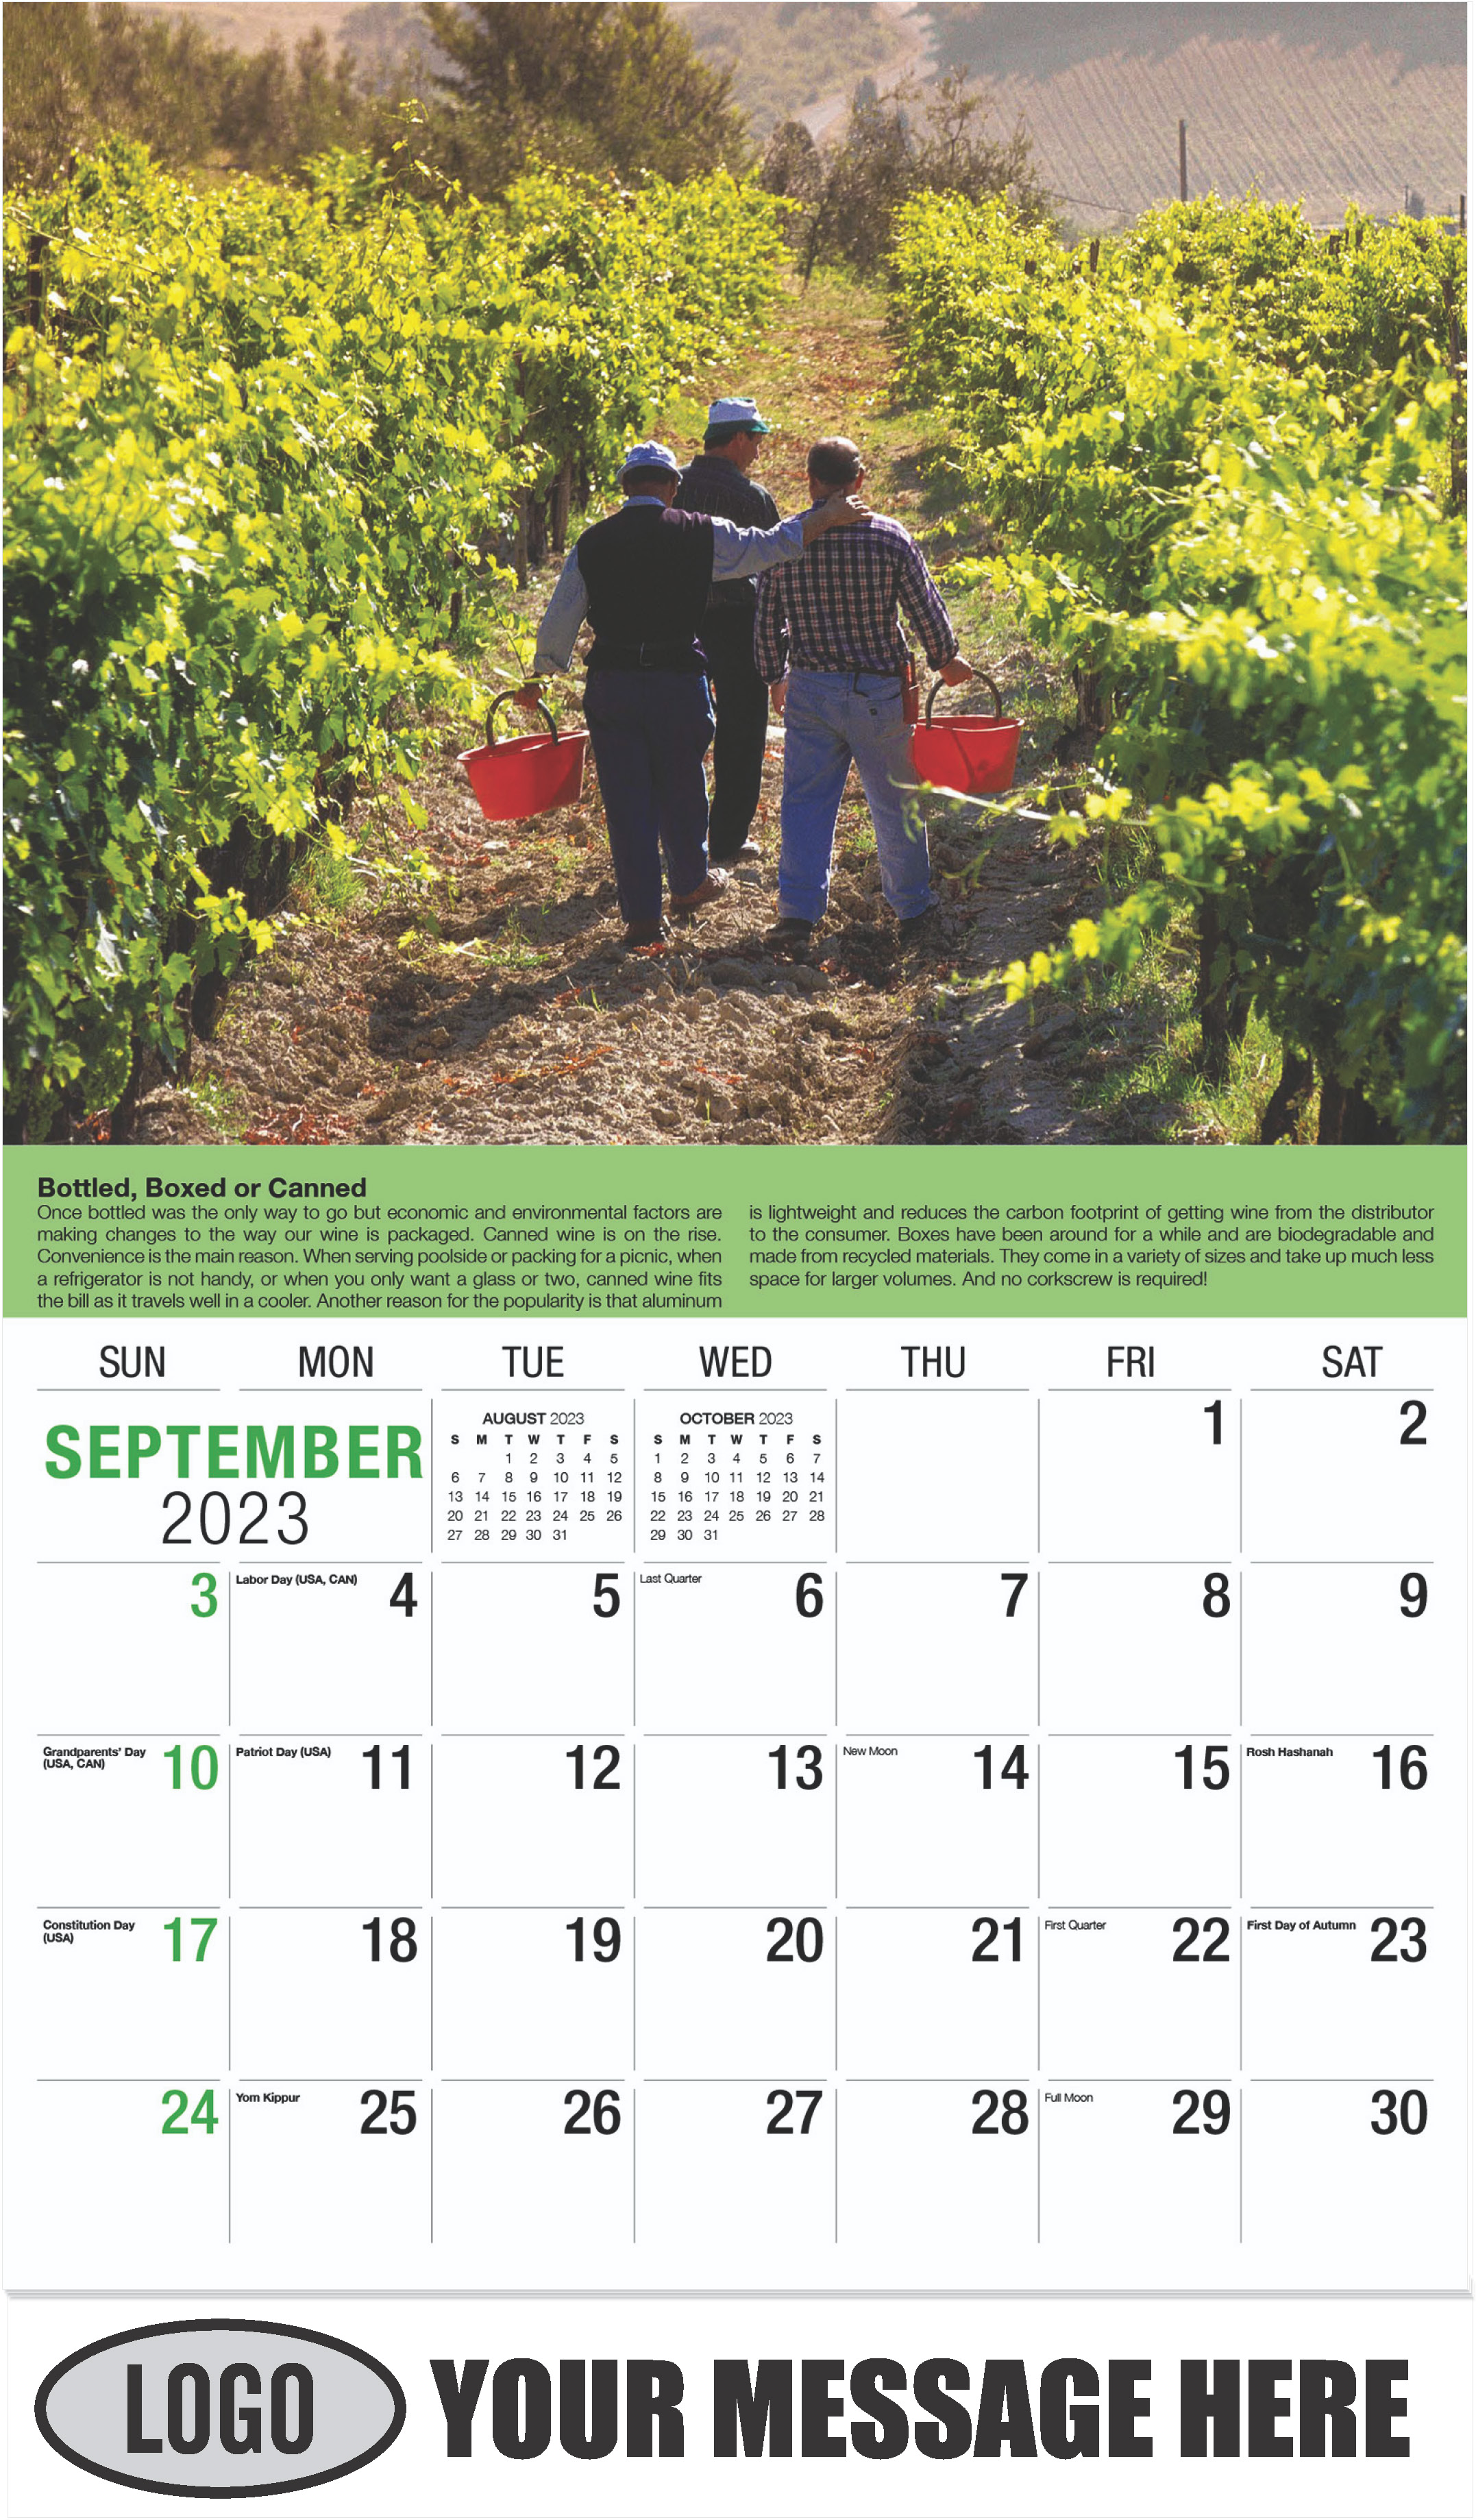 Wine Tips Calendar - September - Vintages 2023 Promotional Calendar